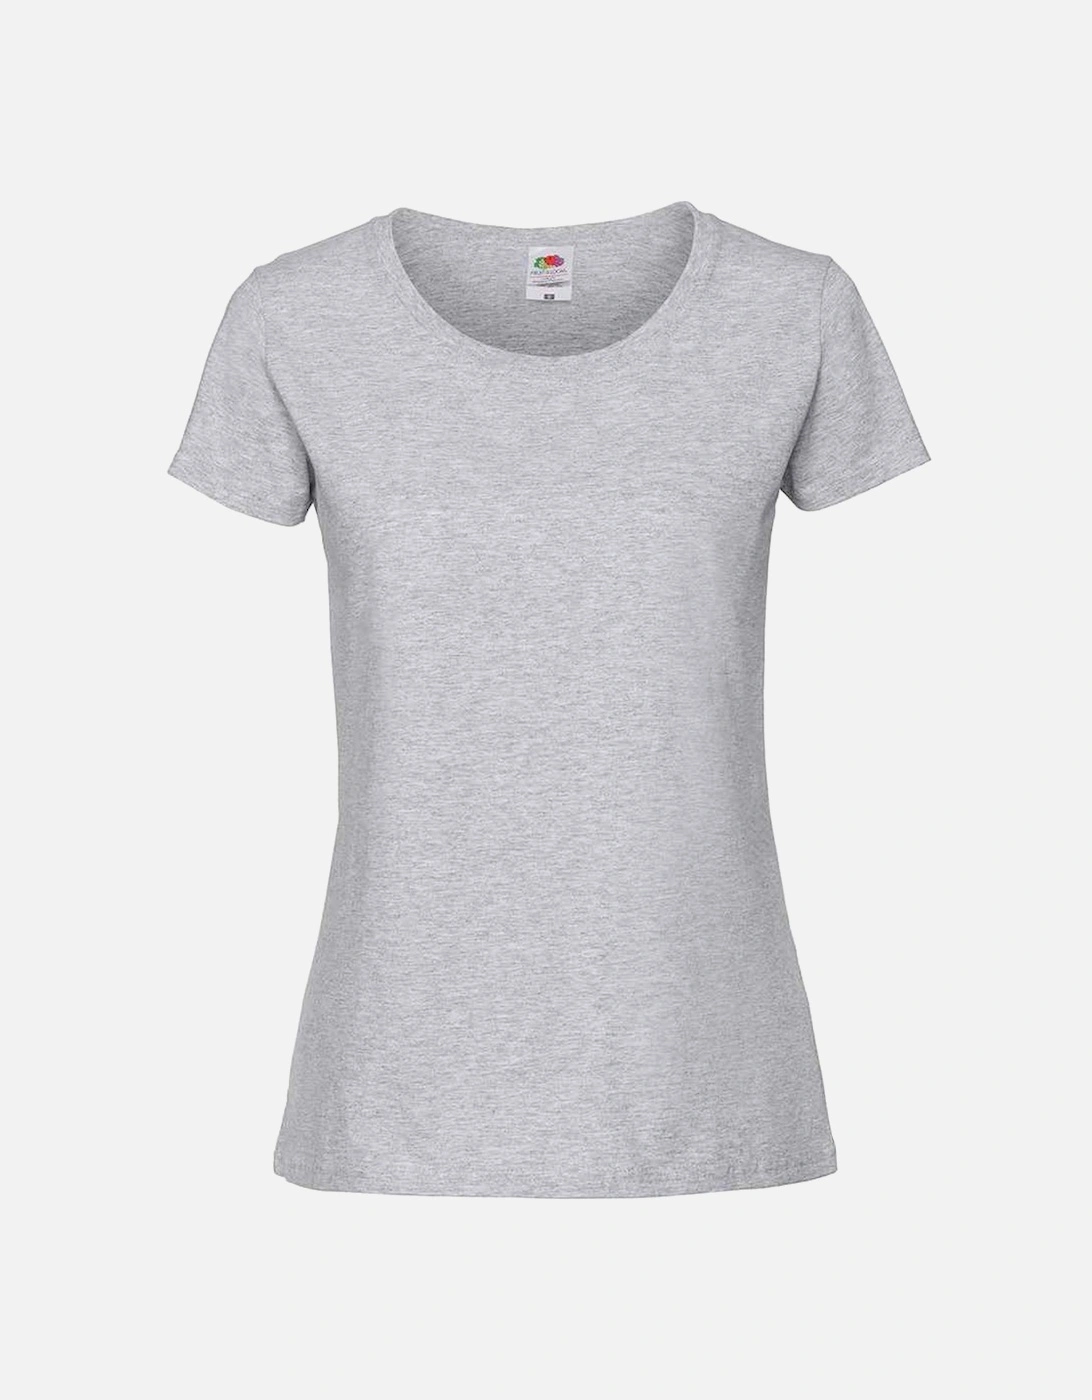 Womens/Ladies Premium T-Shirt, 4 of 3